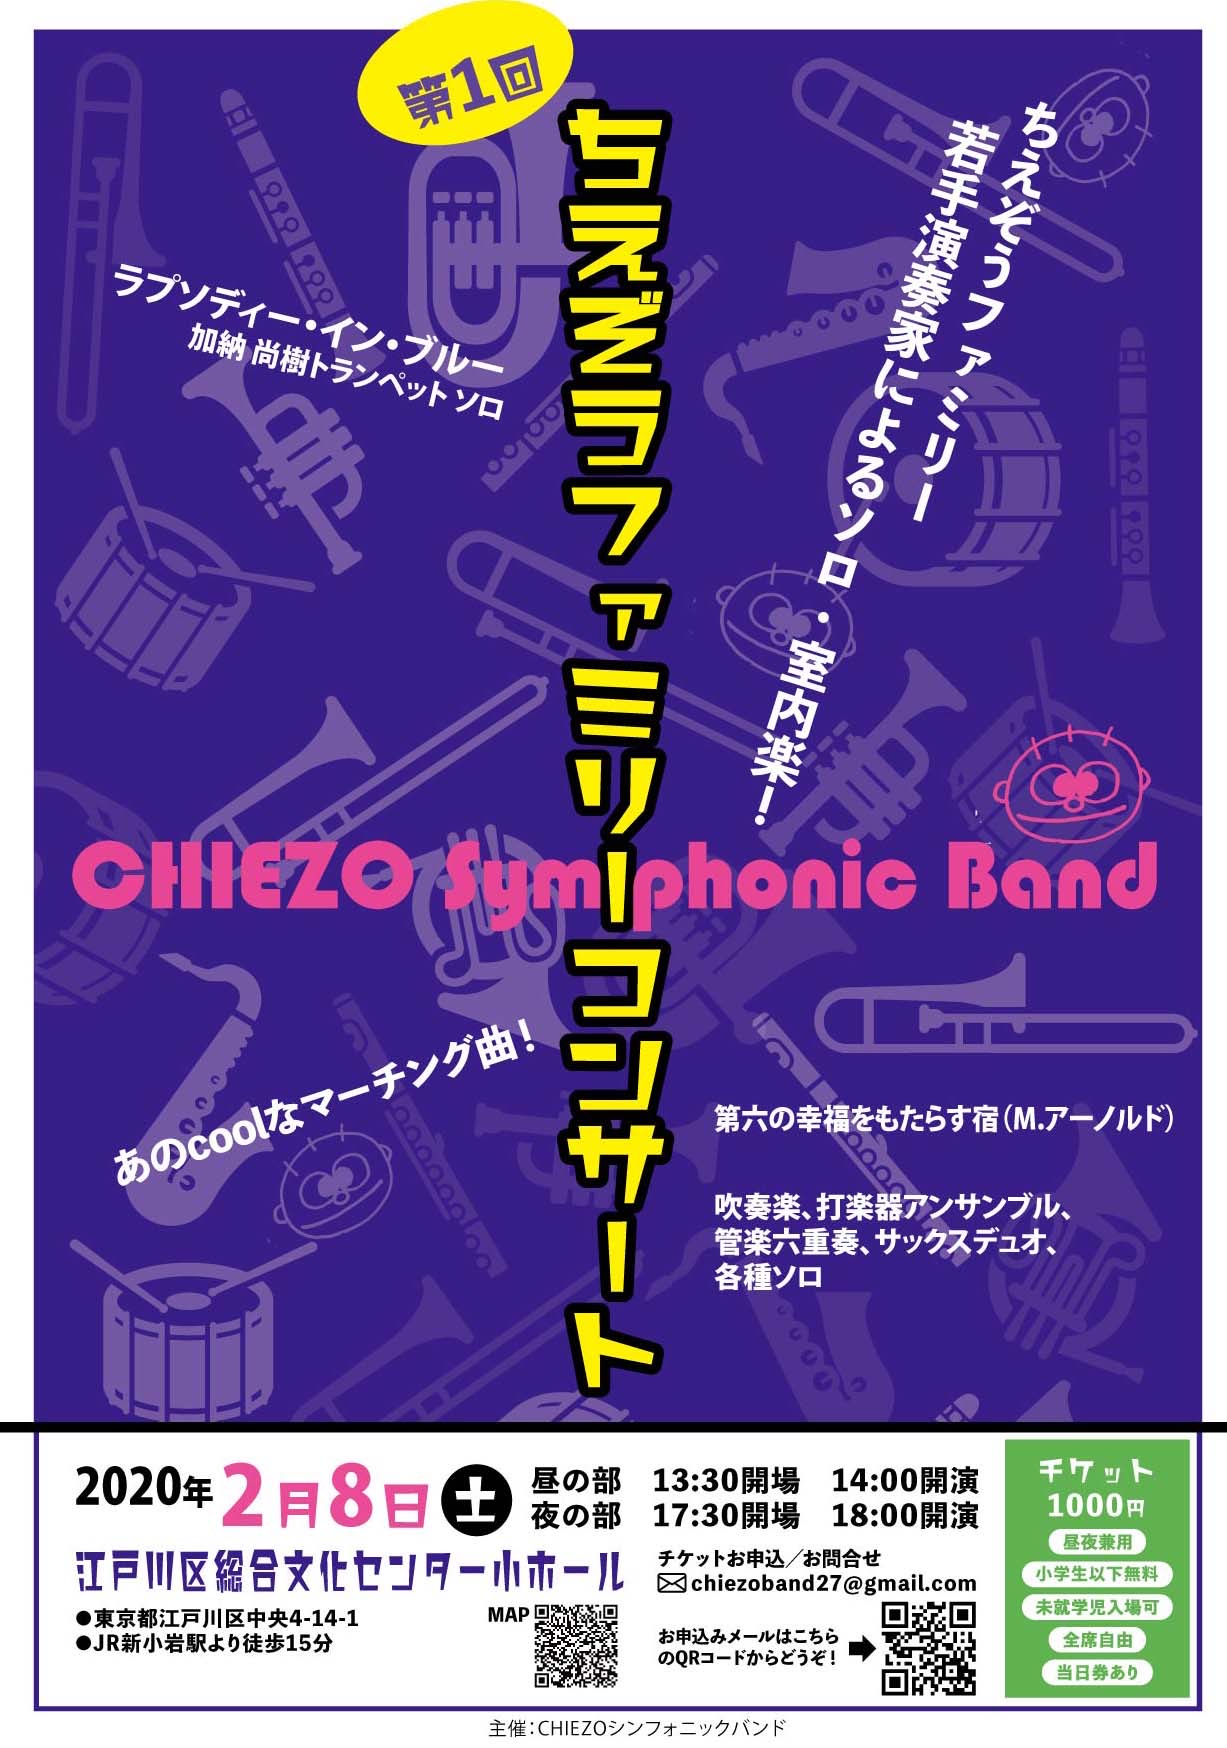 CHIEZO Symphonic Band